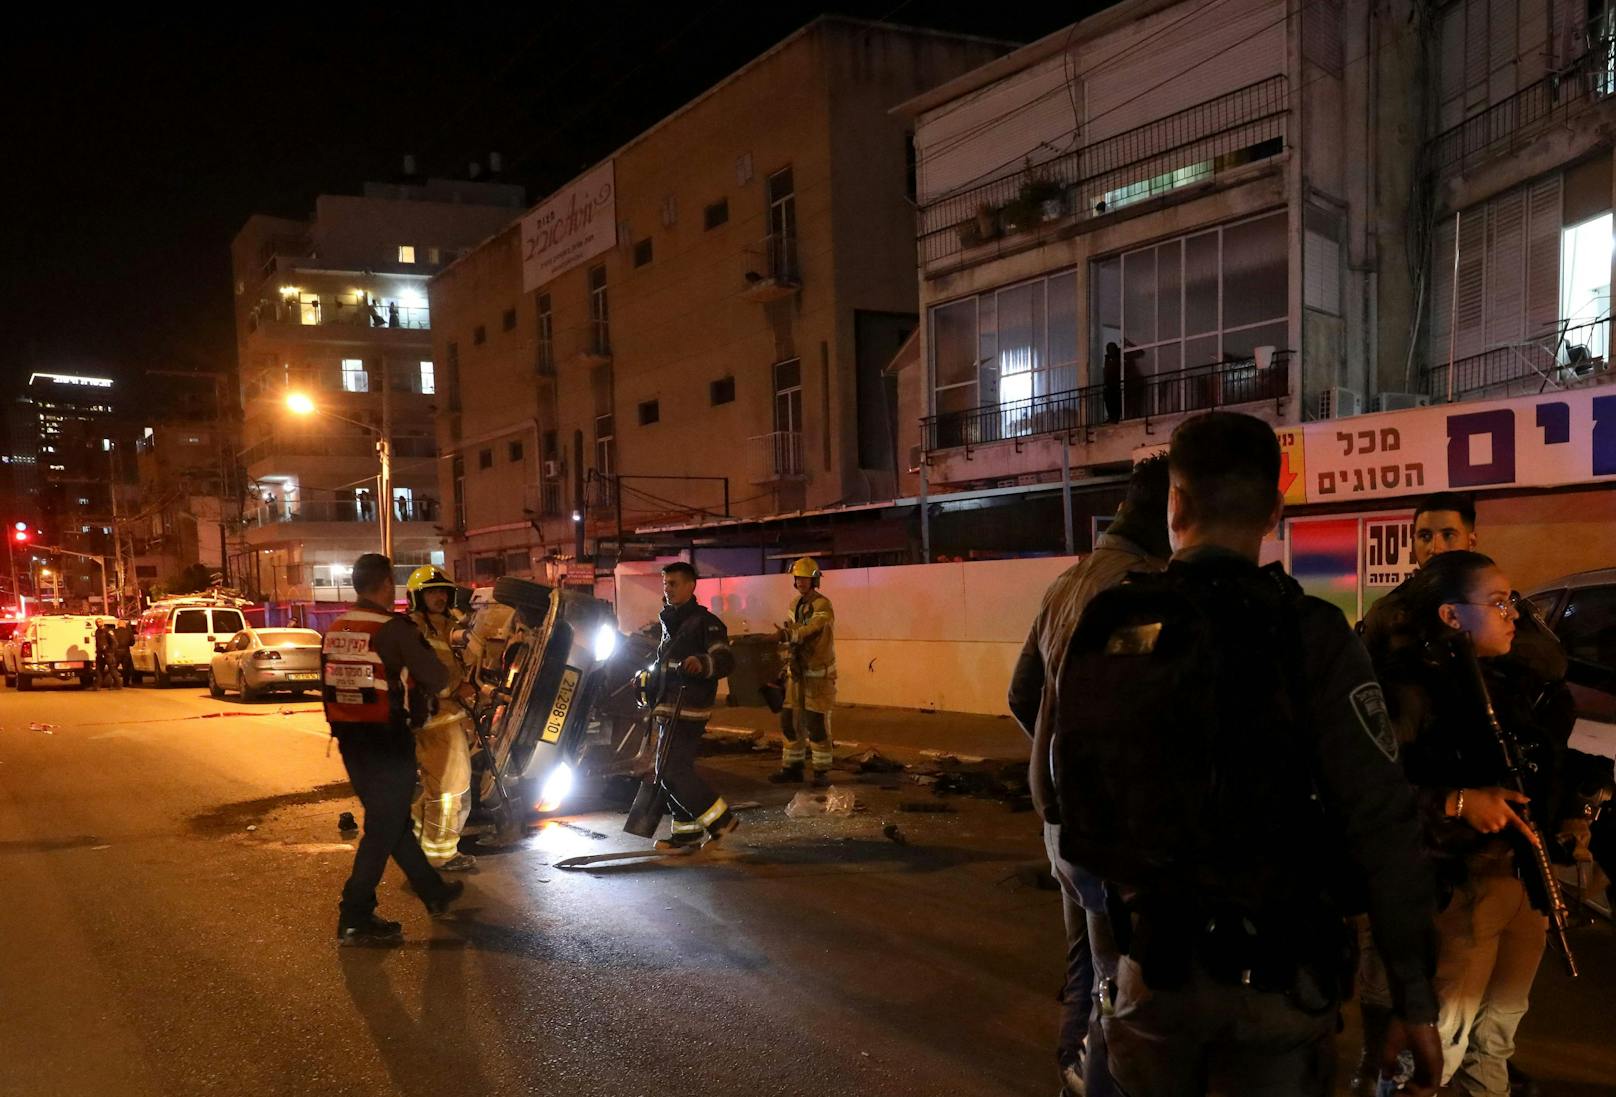 Der Bürgermeister von Bnei Brak hatte die Einwohner nach dem Anschlag aufgerufen, ihre Häuser nicht zu verlassen. Es gab zunächst Spekulationen über mögliche weitere Attentäter.